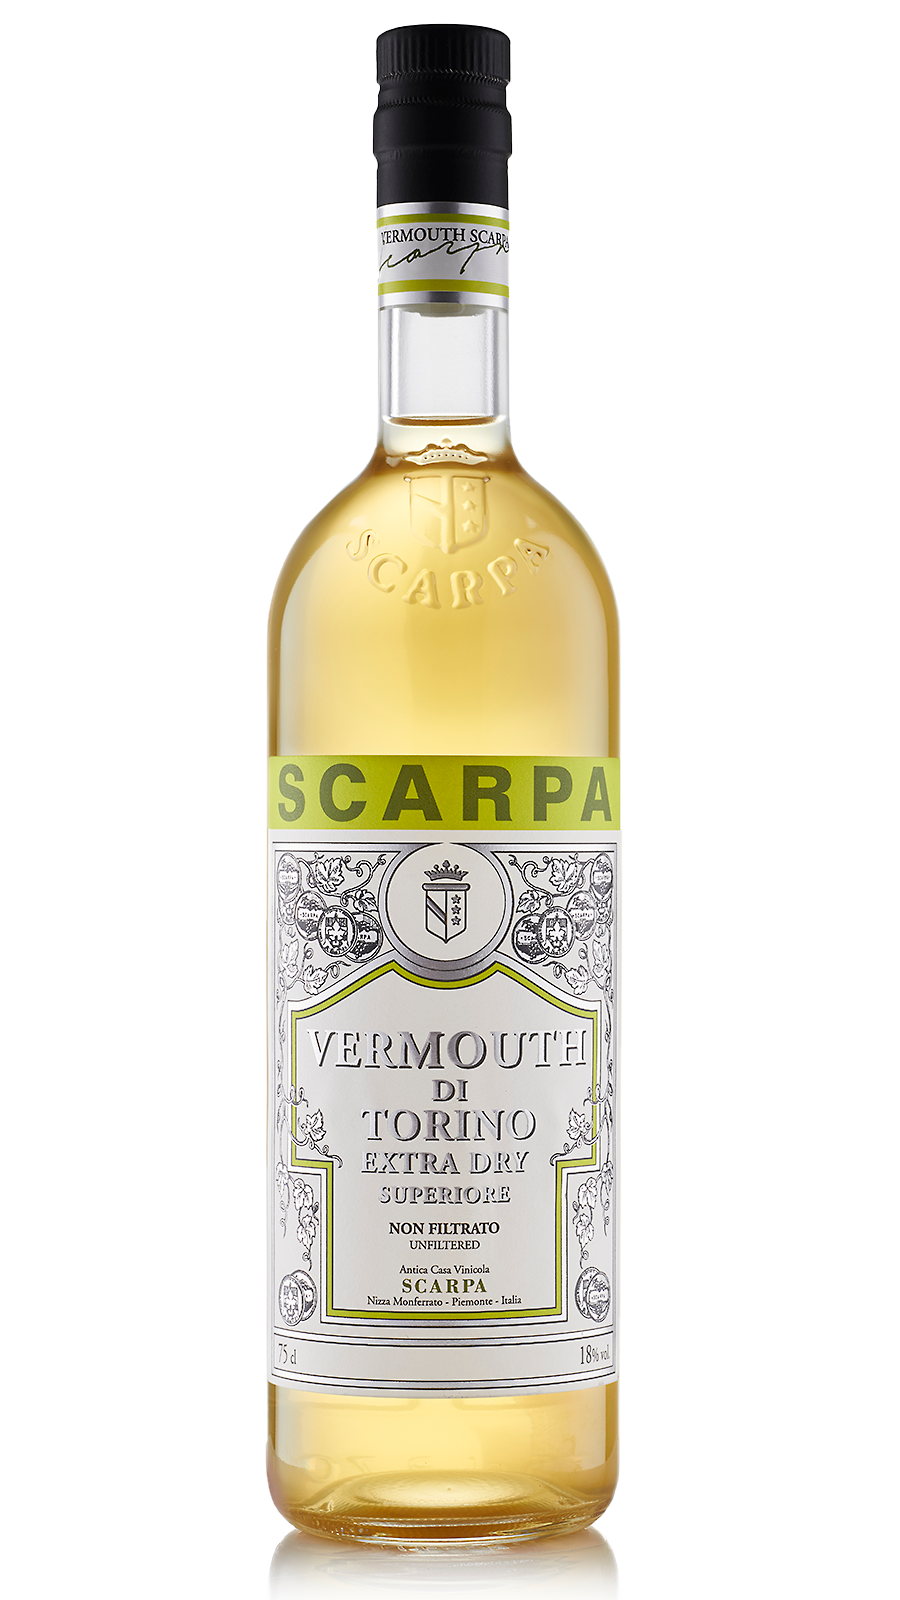 Vermouth di Torino Superiore Extra Dry non filtrato